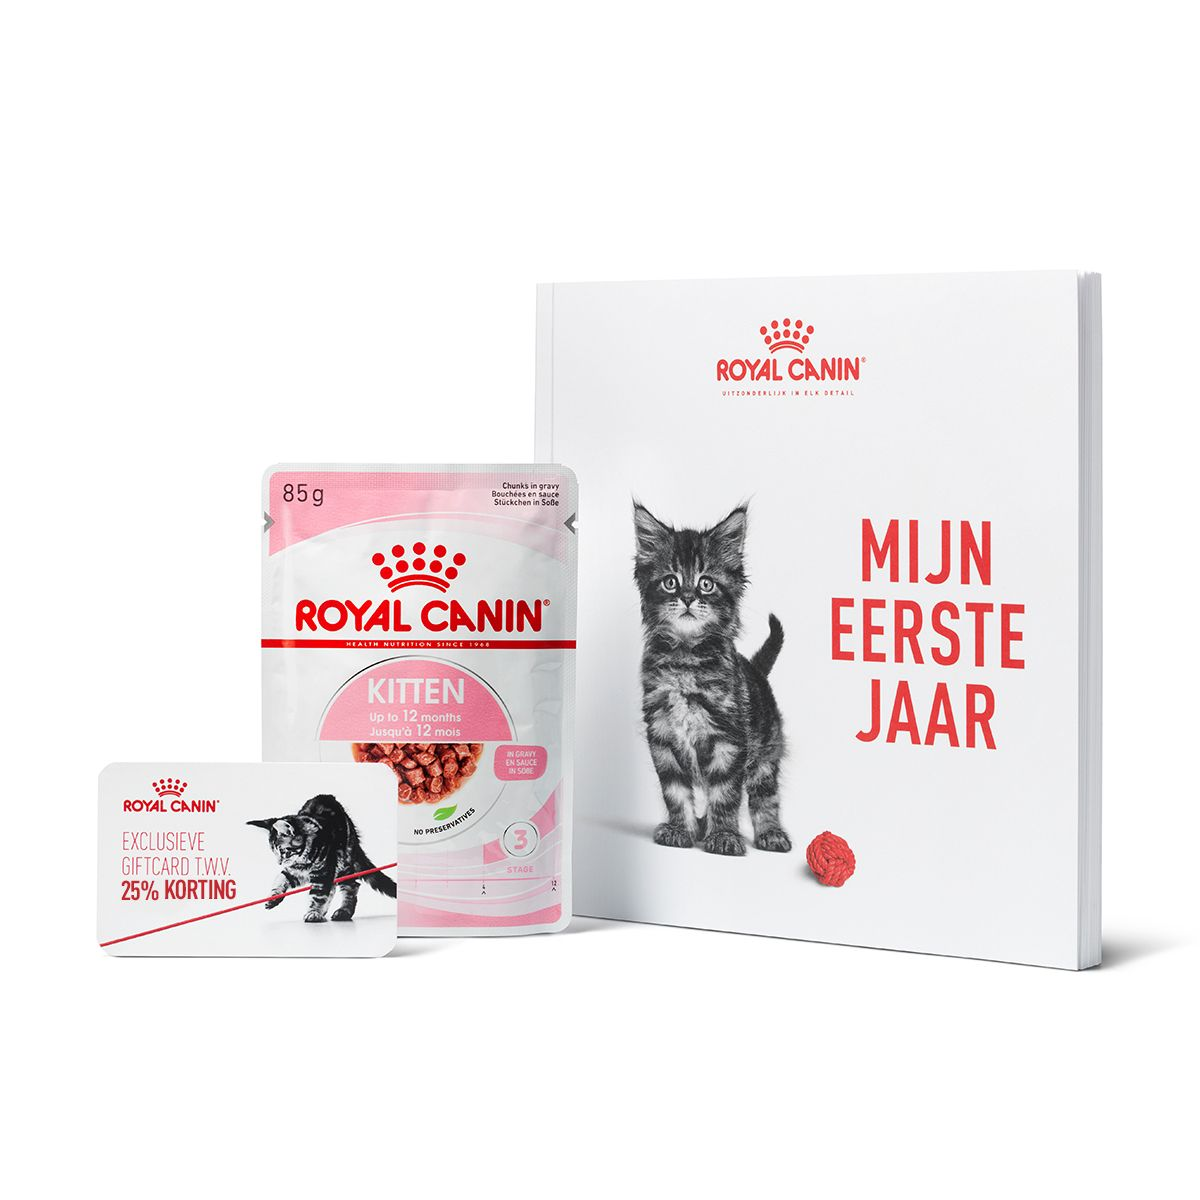 Inhoud Royal Canin Kittenpakket